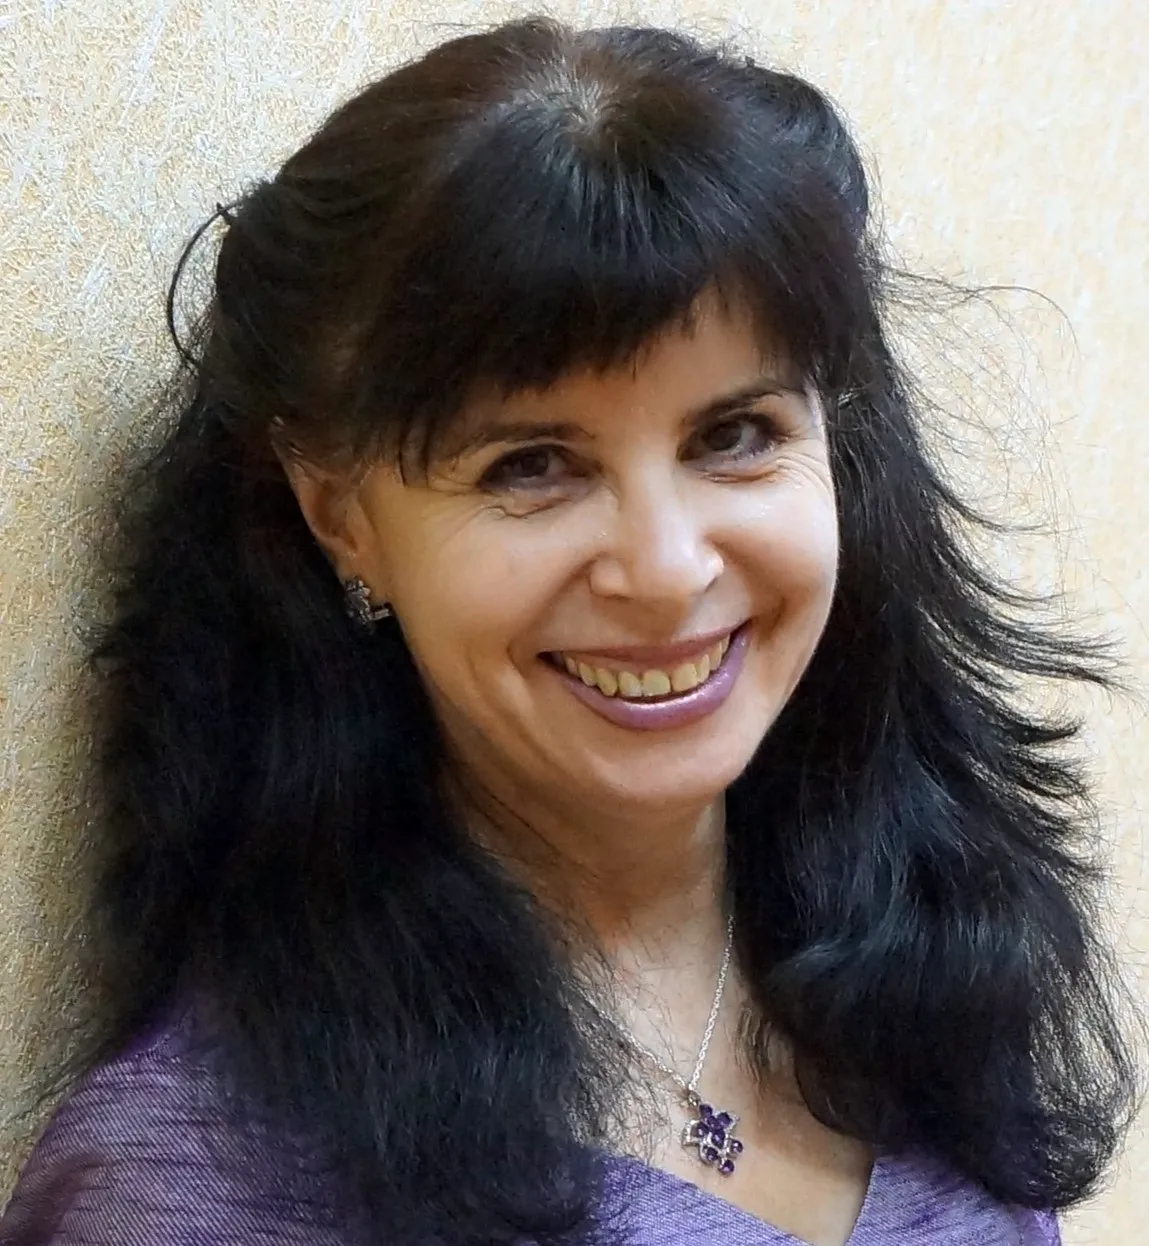 Наталья Чумакова